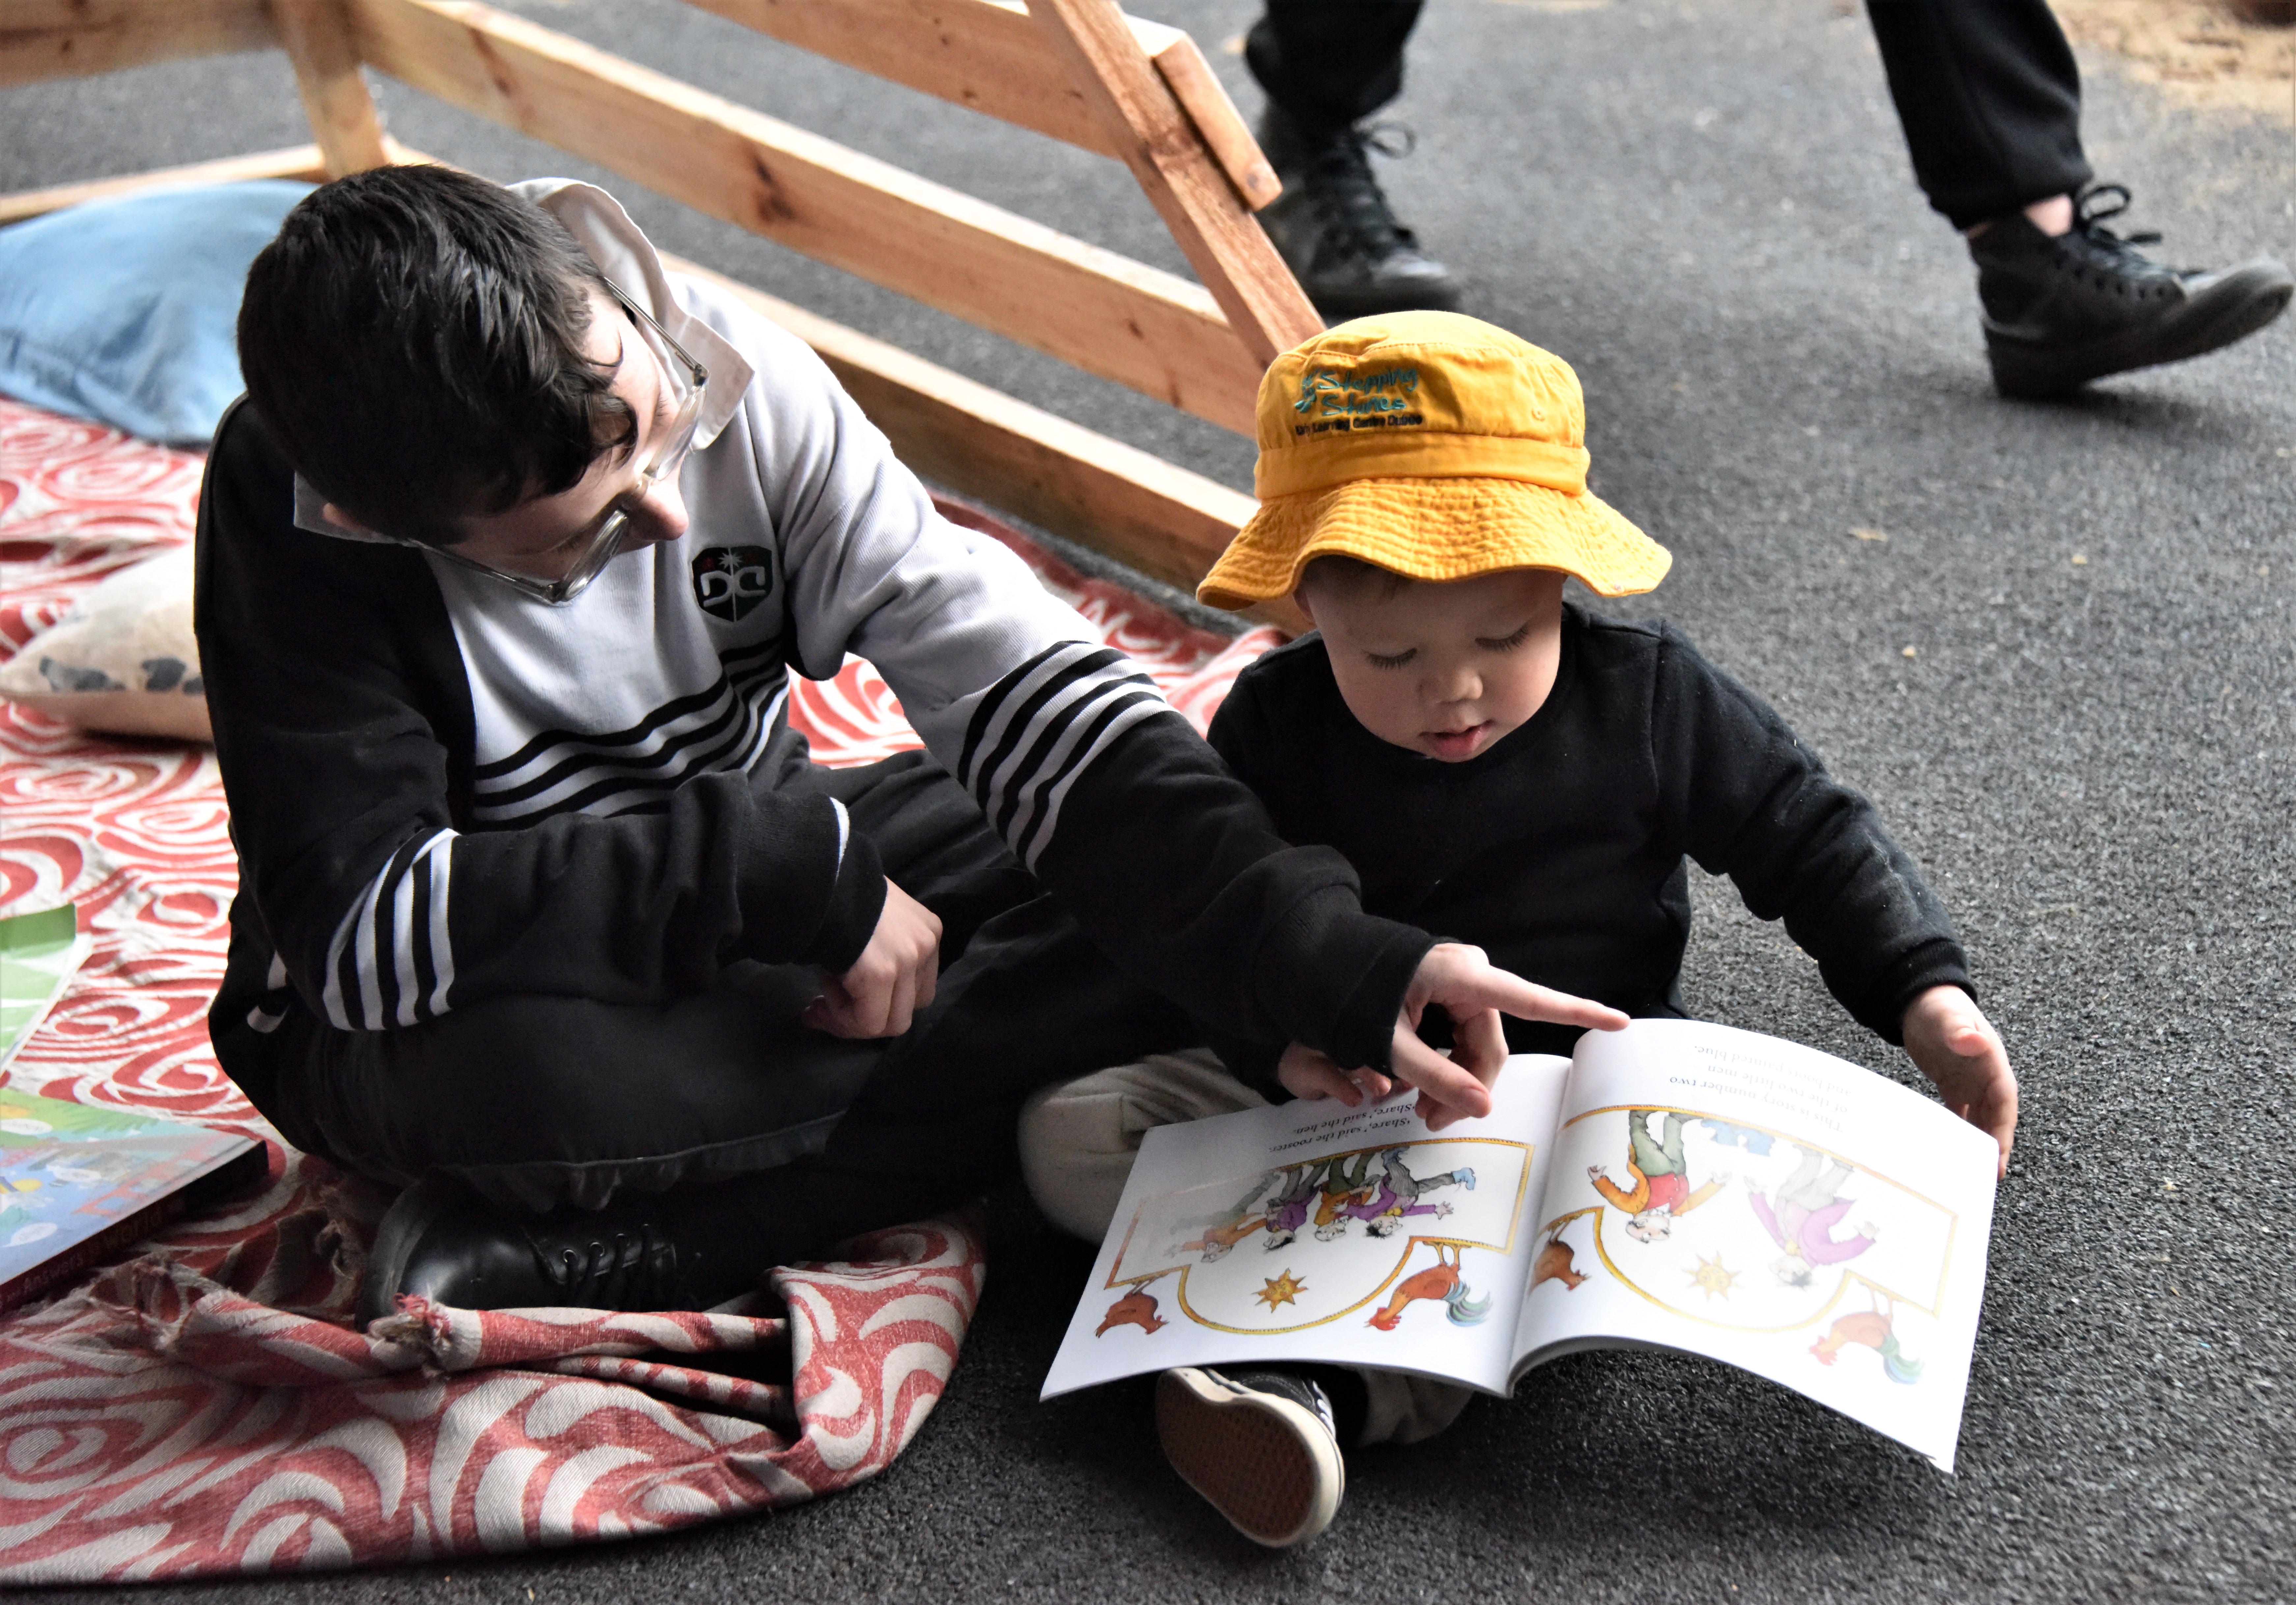 Dubbo College students read to preschoolers